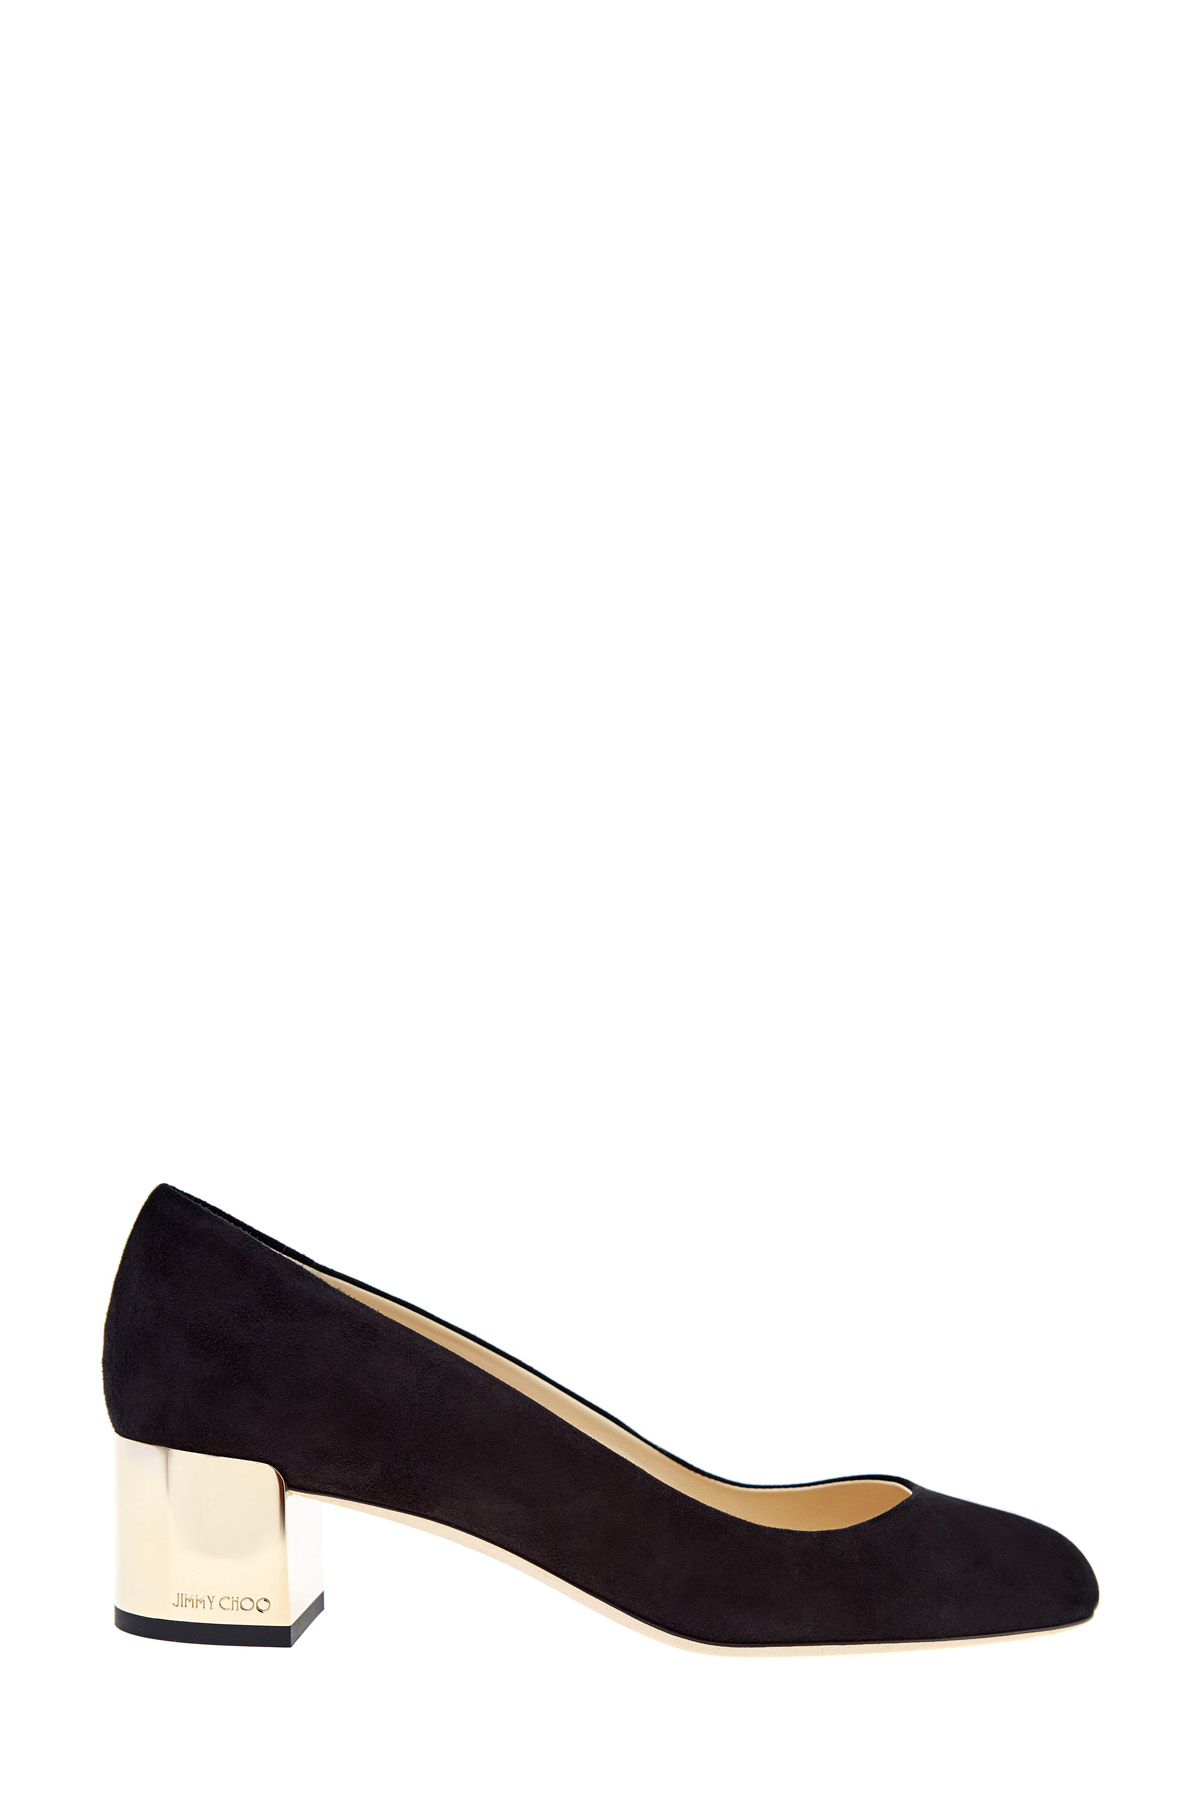 Туфли Jessie на каблуке с золотистым напылением и монограммой JIMMY CHOO, цвет черный, размер 37;37.5;38.5;39 - фото 1